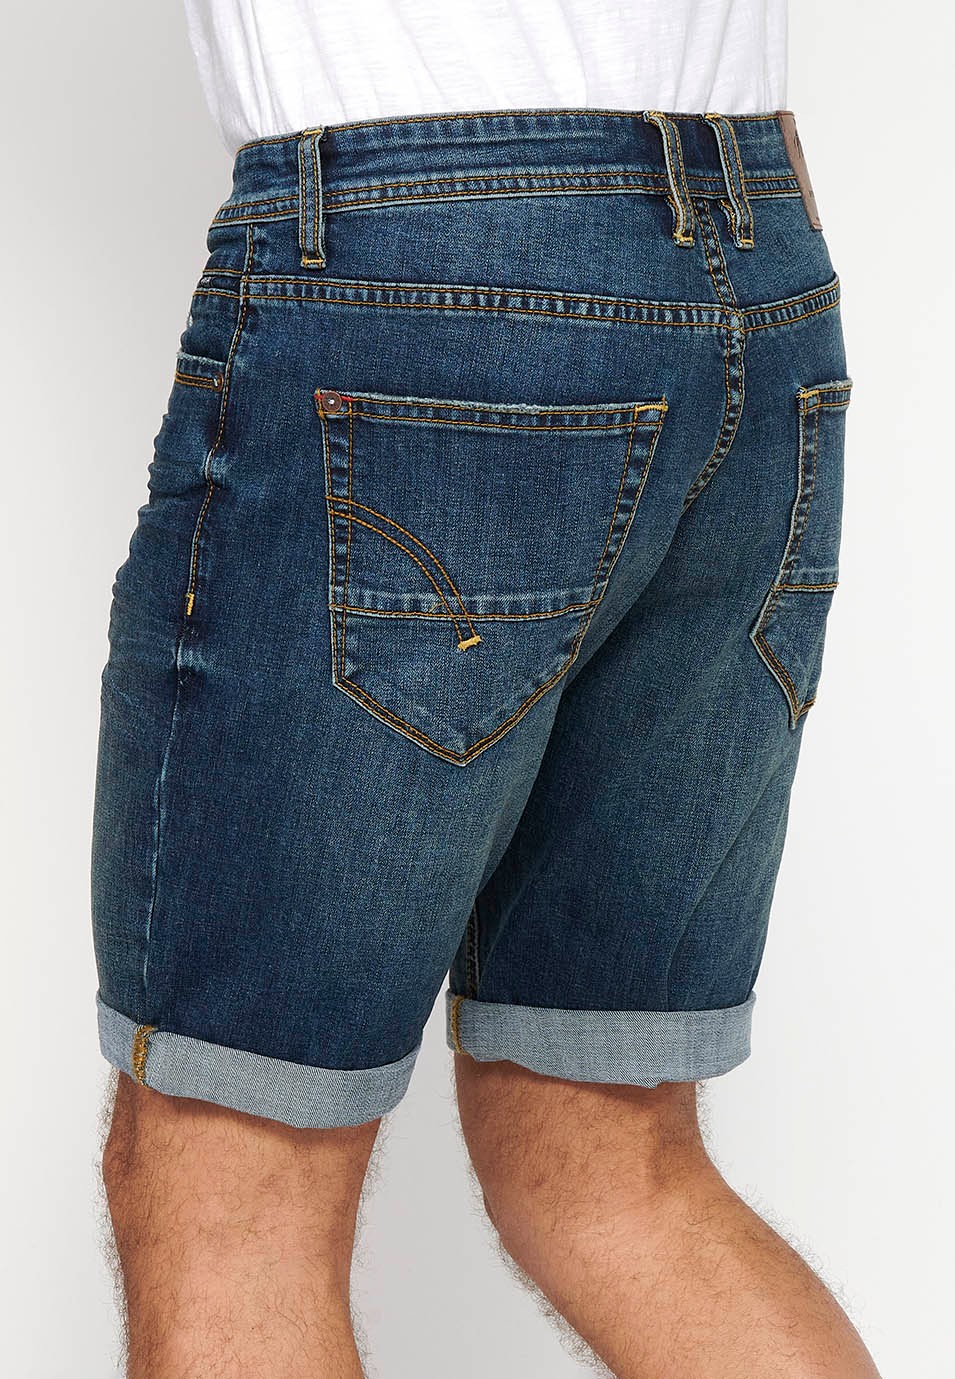 Bermuda-Jeansshorts mit Reißverschluss und Knopfverschluss vorne und fünf Taschen, eine blaue Tasche für Herren 6